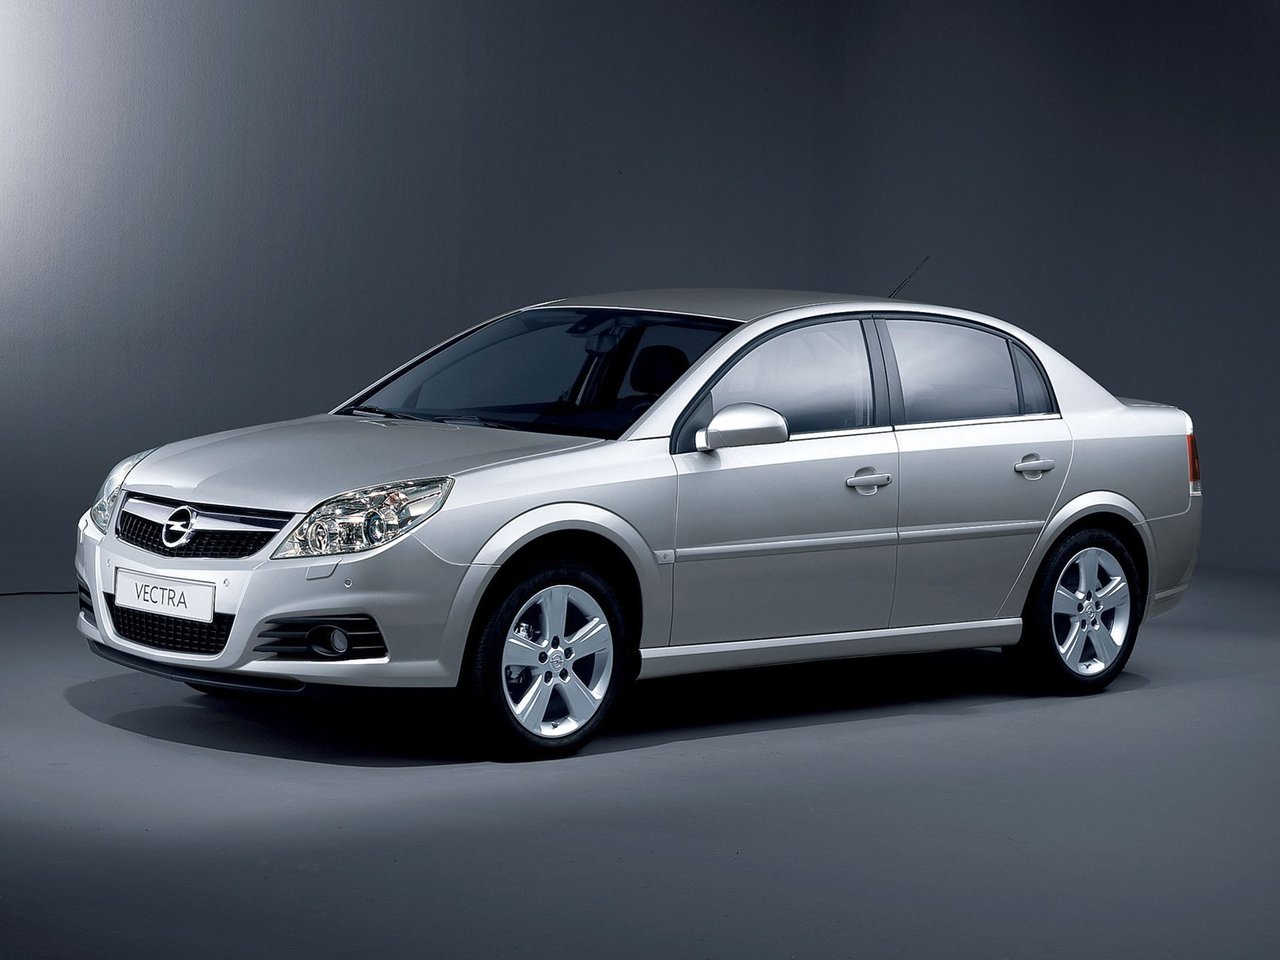 Расход газа восьми комплектаций седана Opel Vectra. Разница стоимости заправки газом и бензином. Автономный пробег до и после установки ГБО.